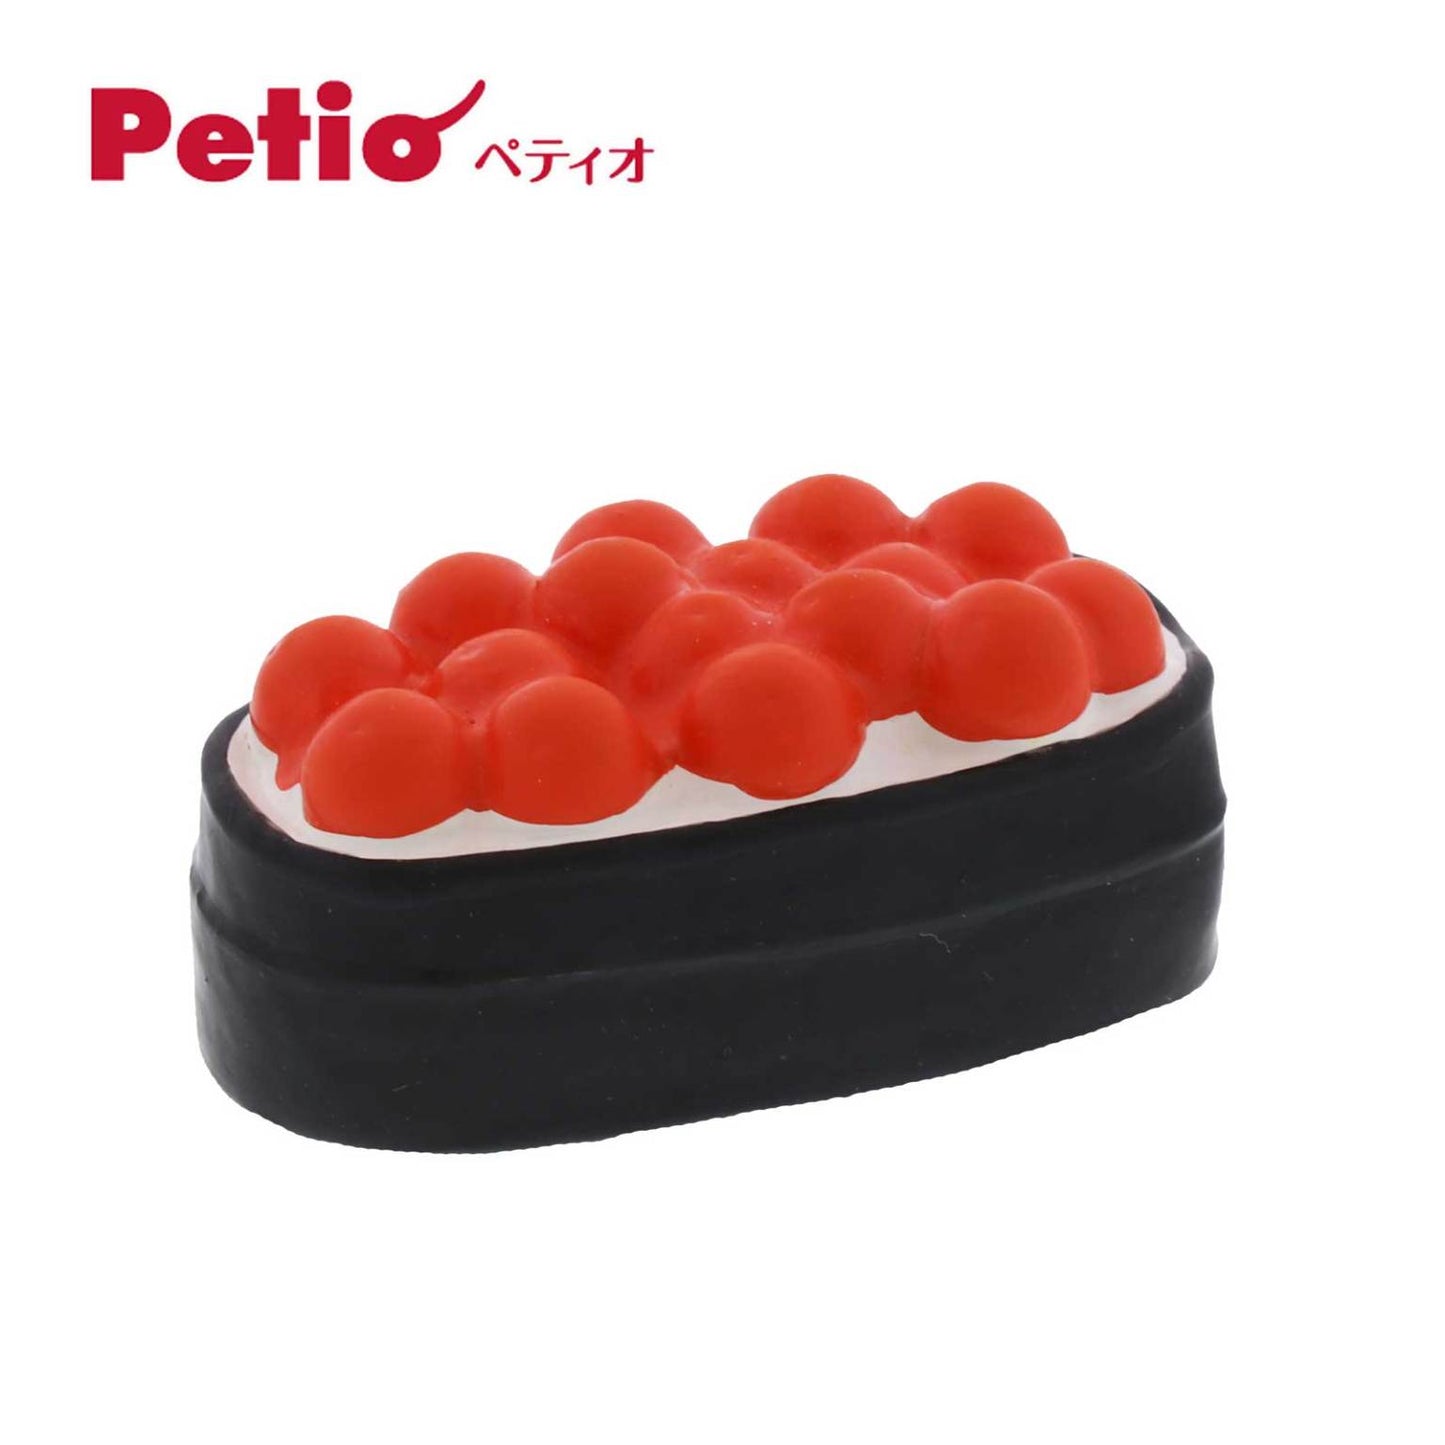 Petio Sushi Series Latex Squeaky Dog Toy Salmon Caviar